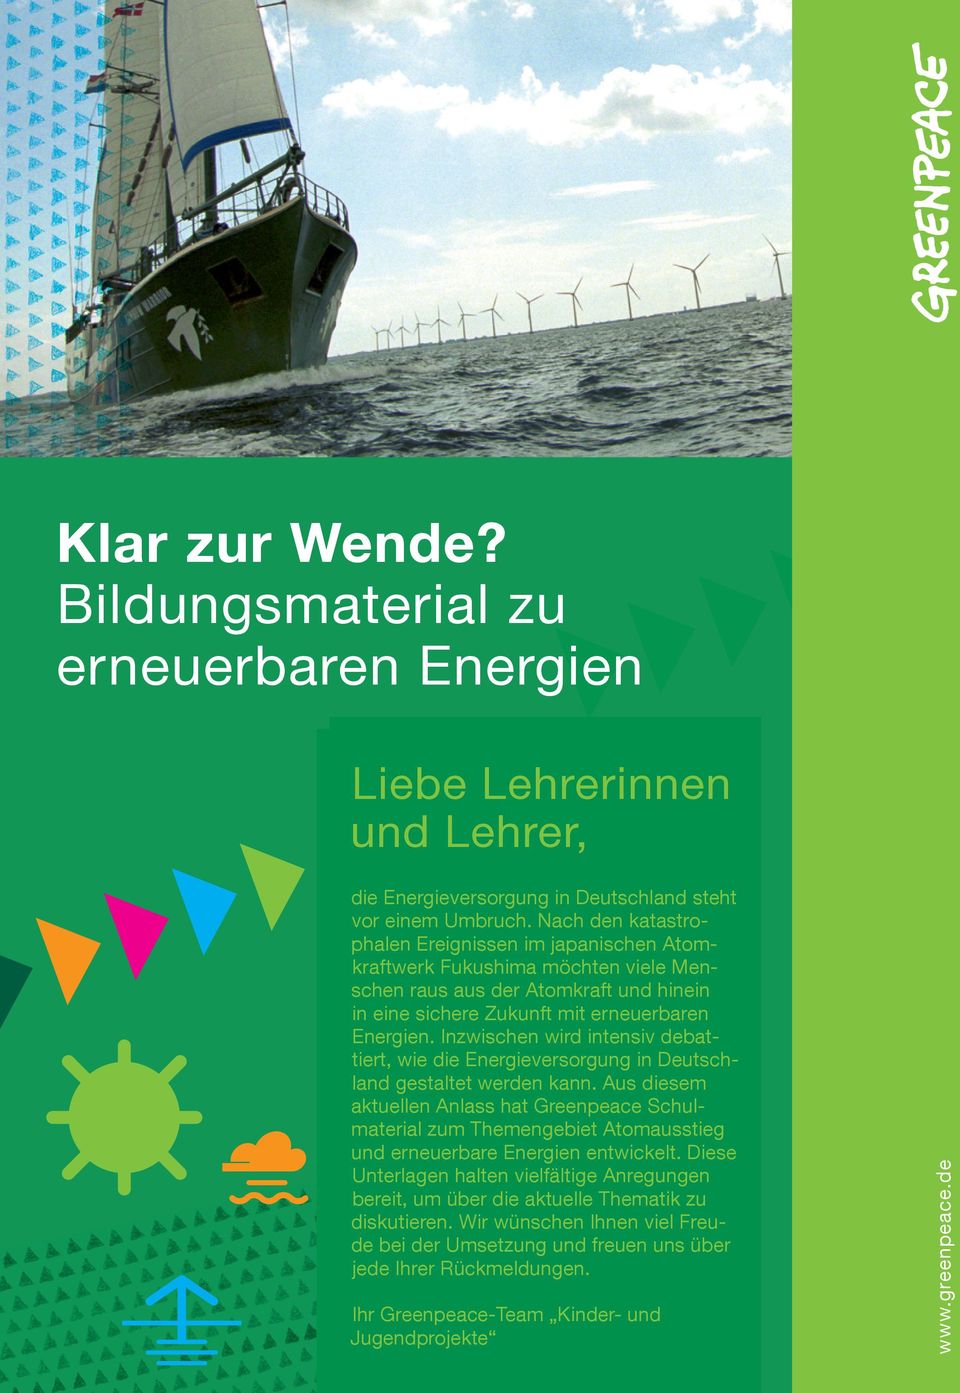 Inzwischen wird intensiv debattiert, wie die Energieversorgung in Deutschland gestaltet werden kann.